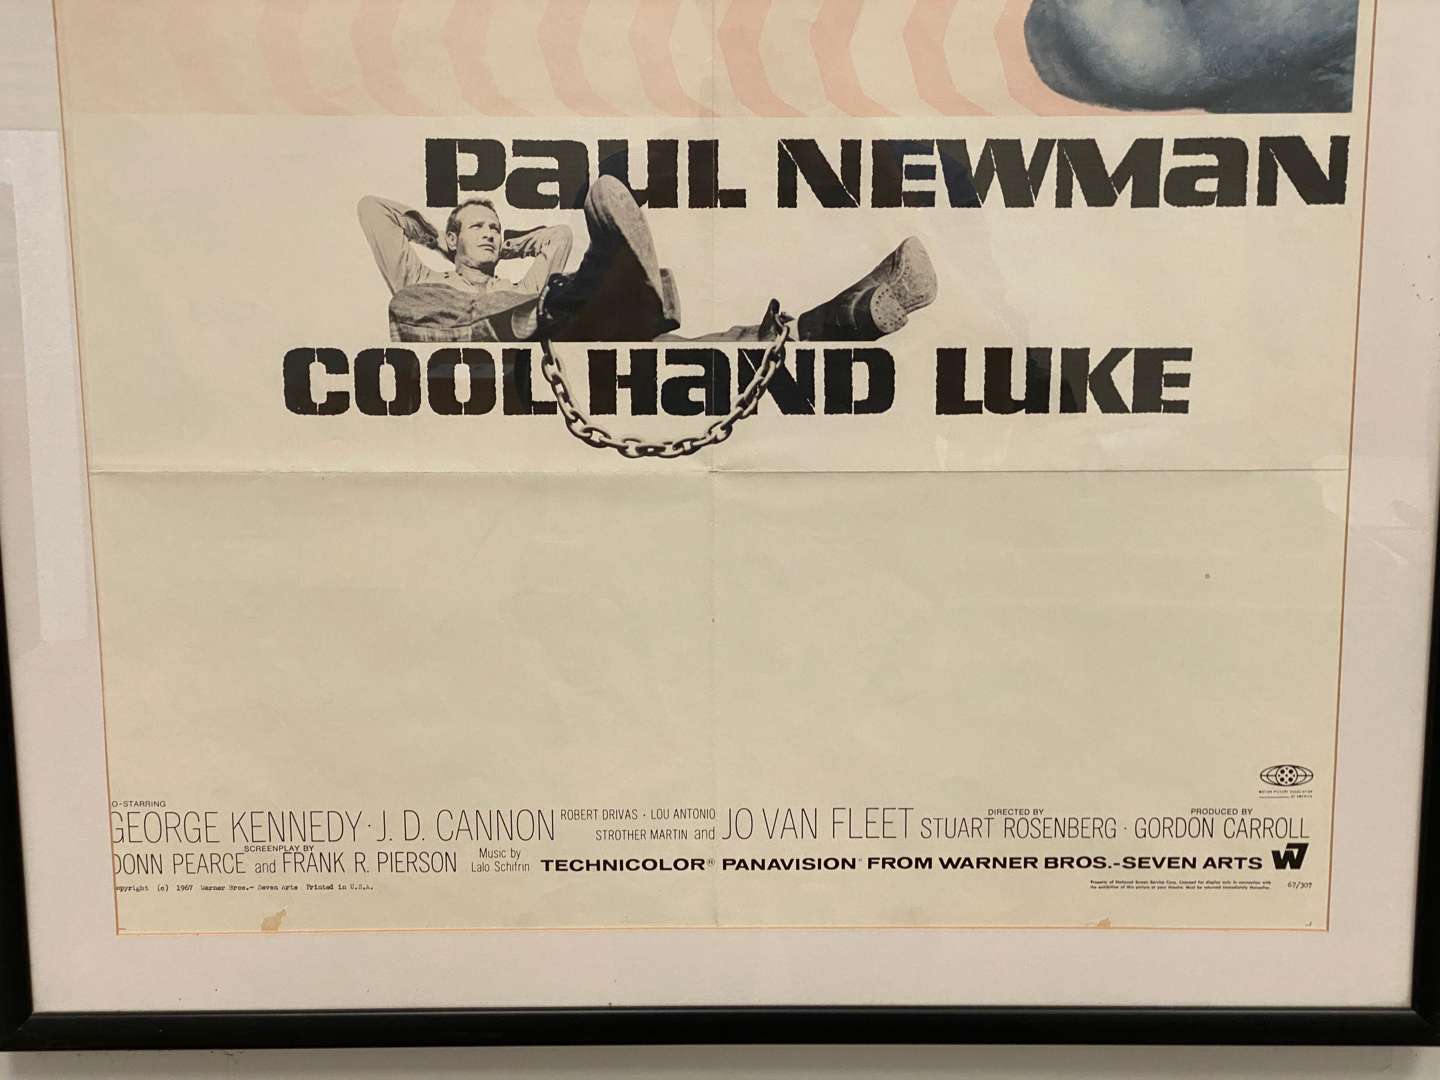 <p>“COOL HAND LUKE” framed, original film poster.</p>